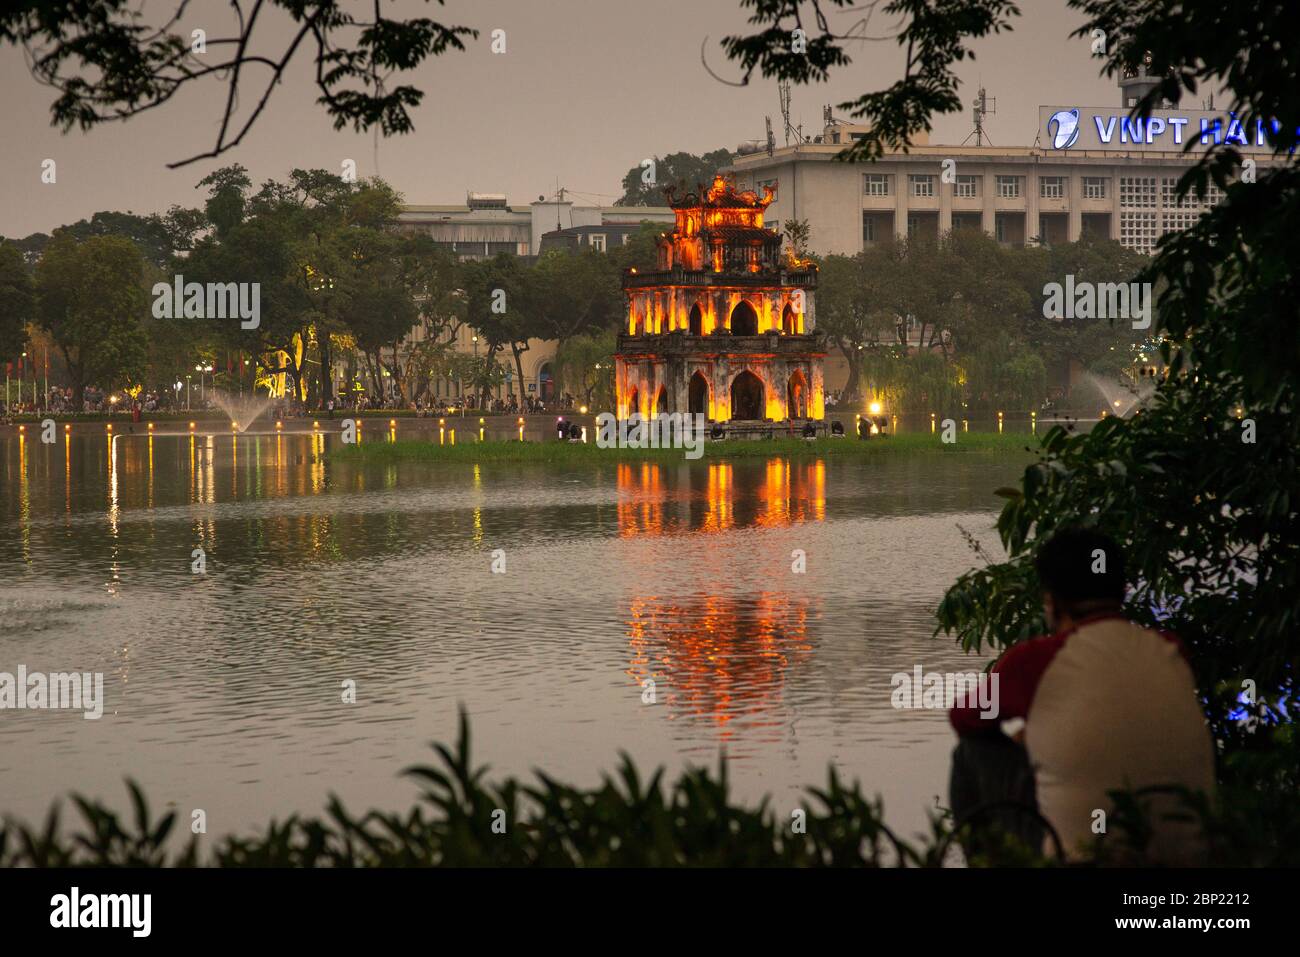 Uomo irriconoscibile, il lago Hoan Kiem e la torre delle tartarughe, preso la prima sera, Hanoi, Vietnam Foto Stock